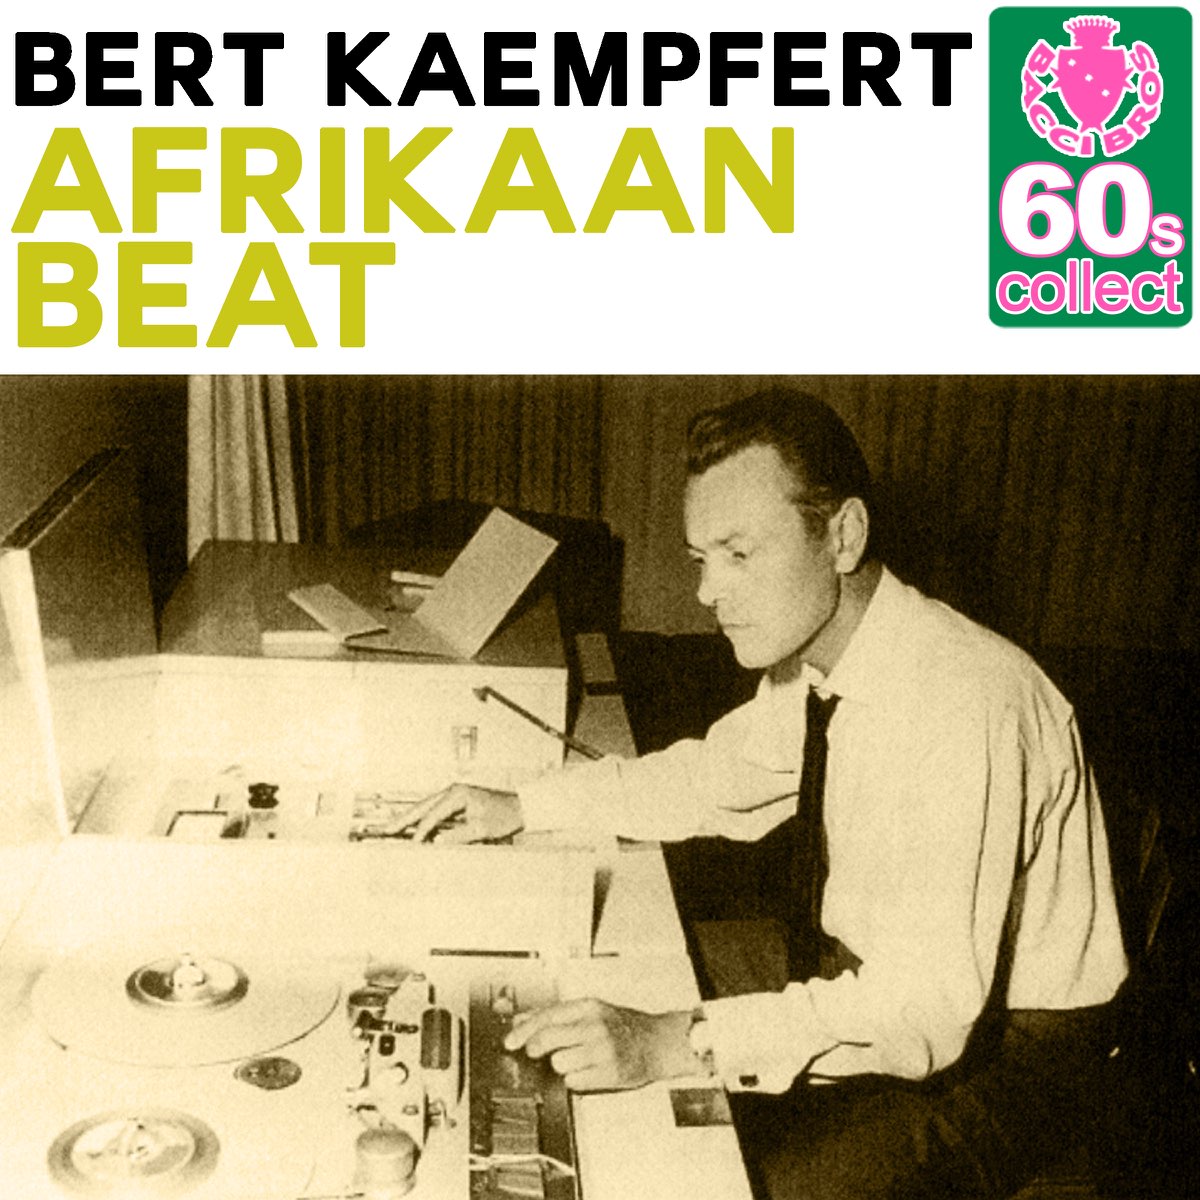 Afrikaan Beat (Remastered) - Single by Bert Kaempfert on Apple Music